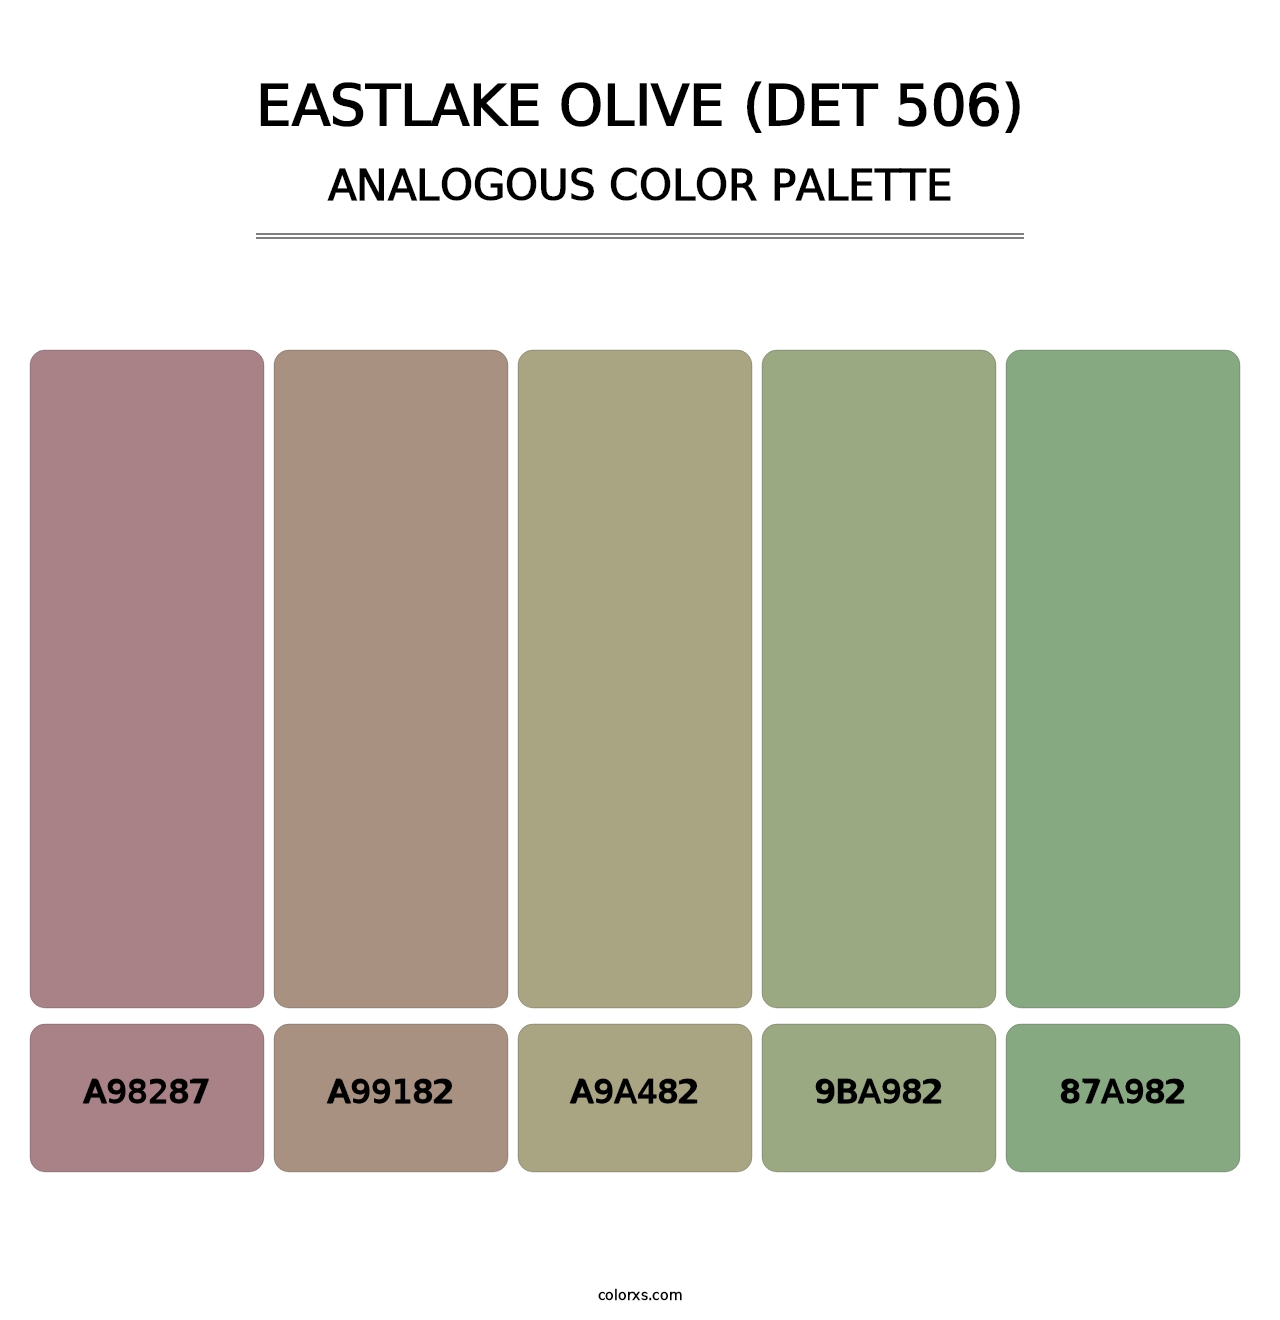 Eastlake Olive (DET 506) - Analogous Color Palette